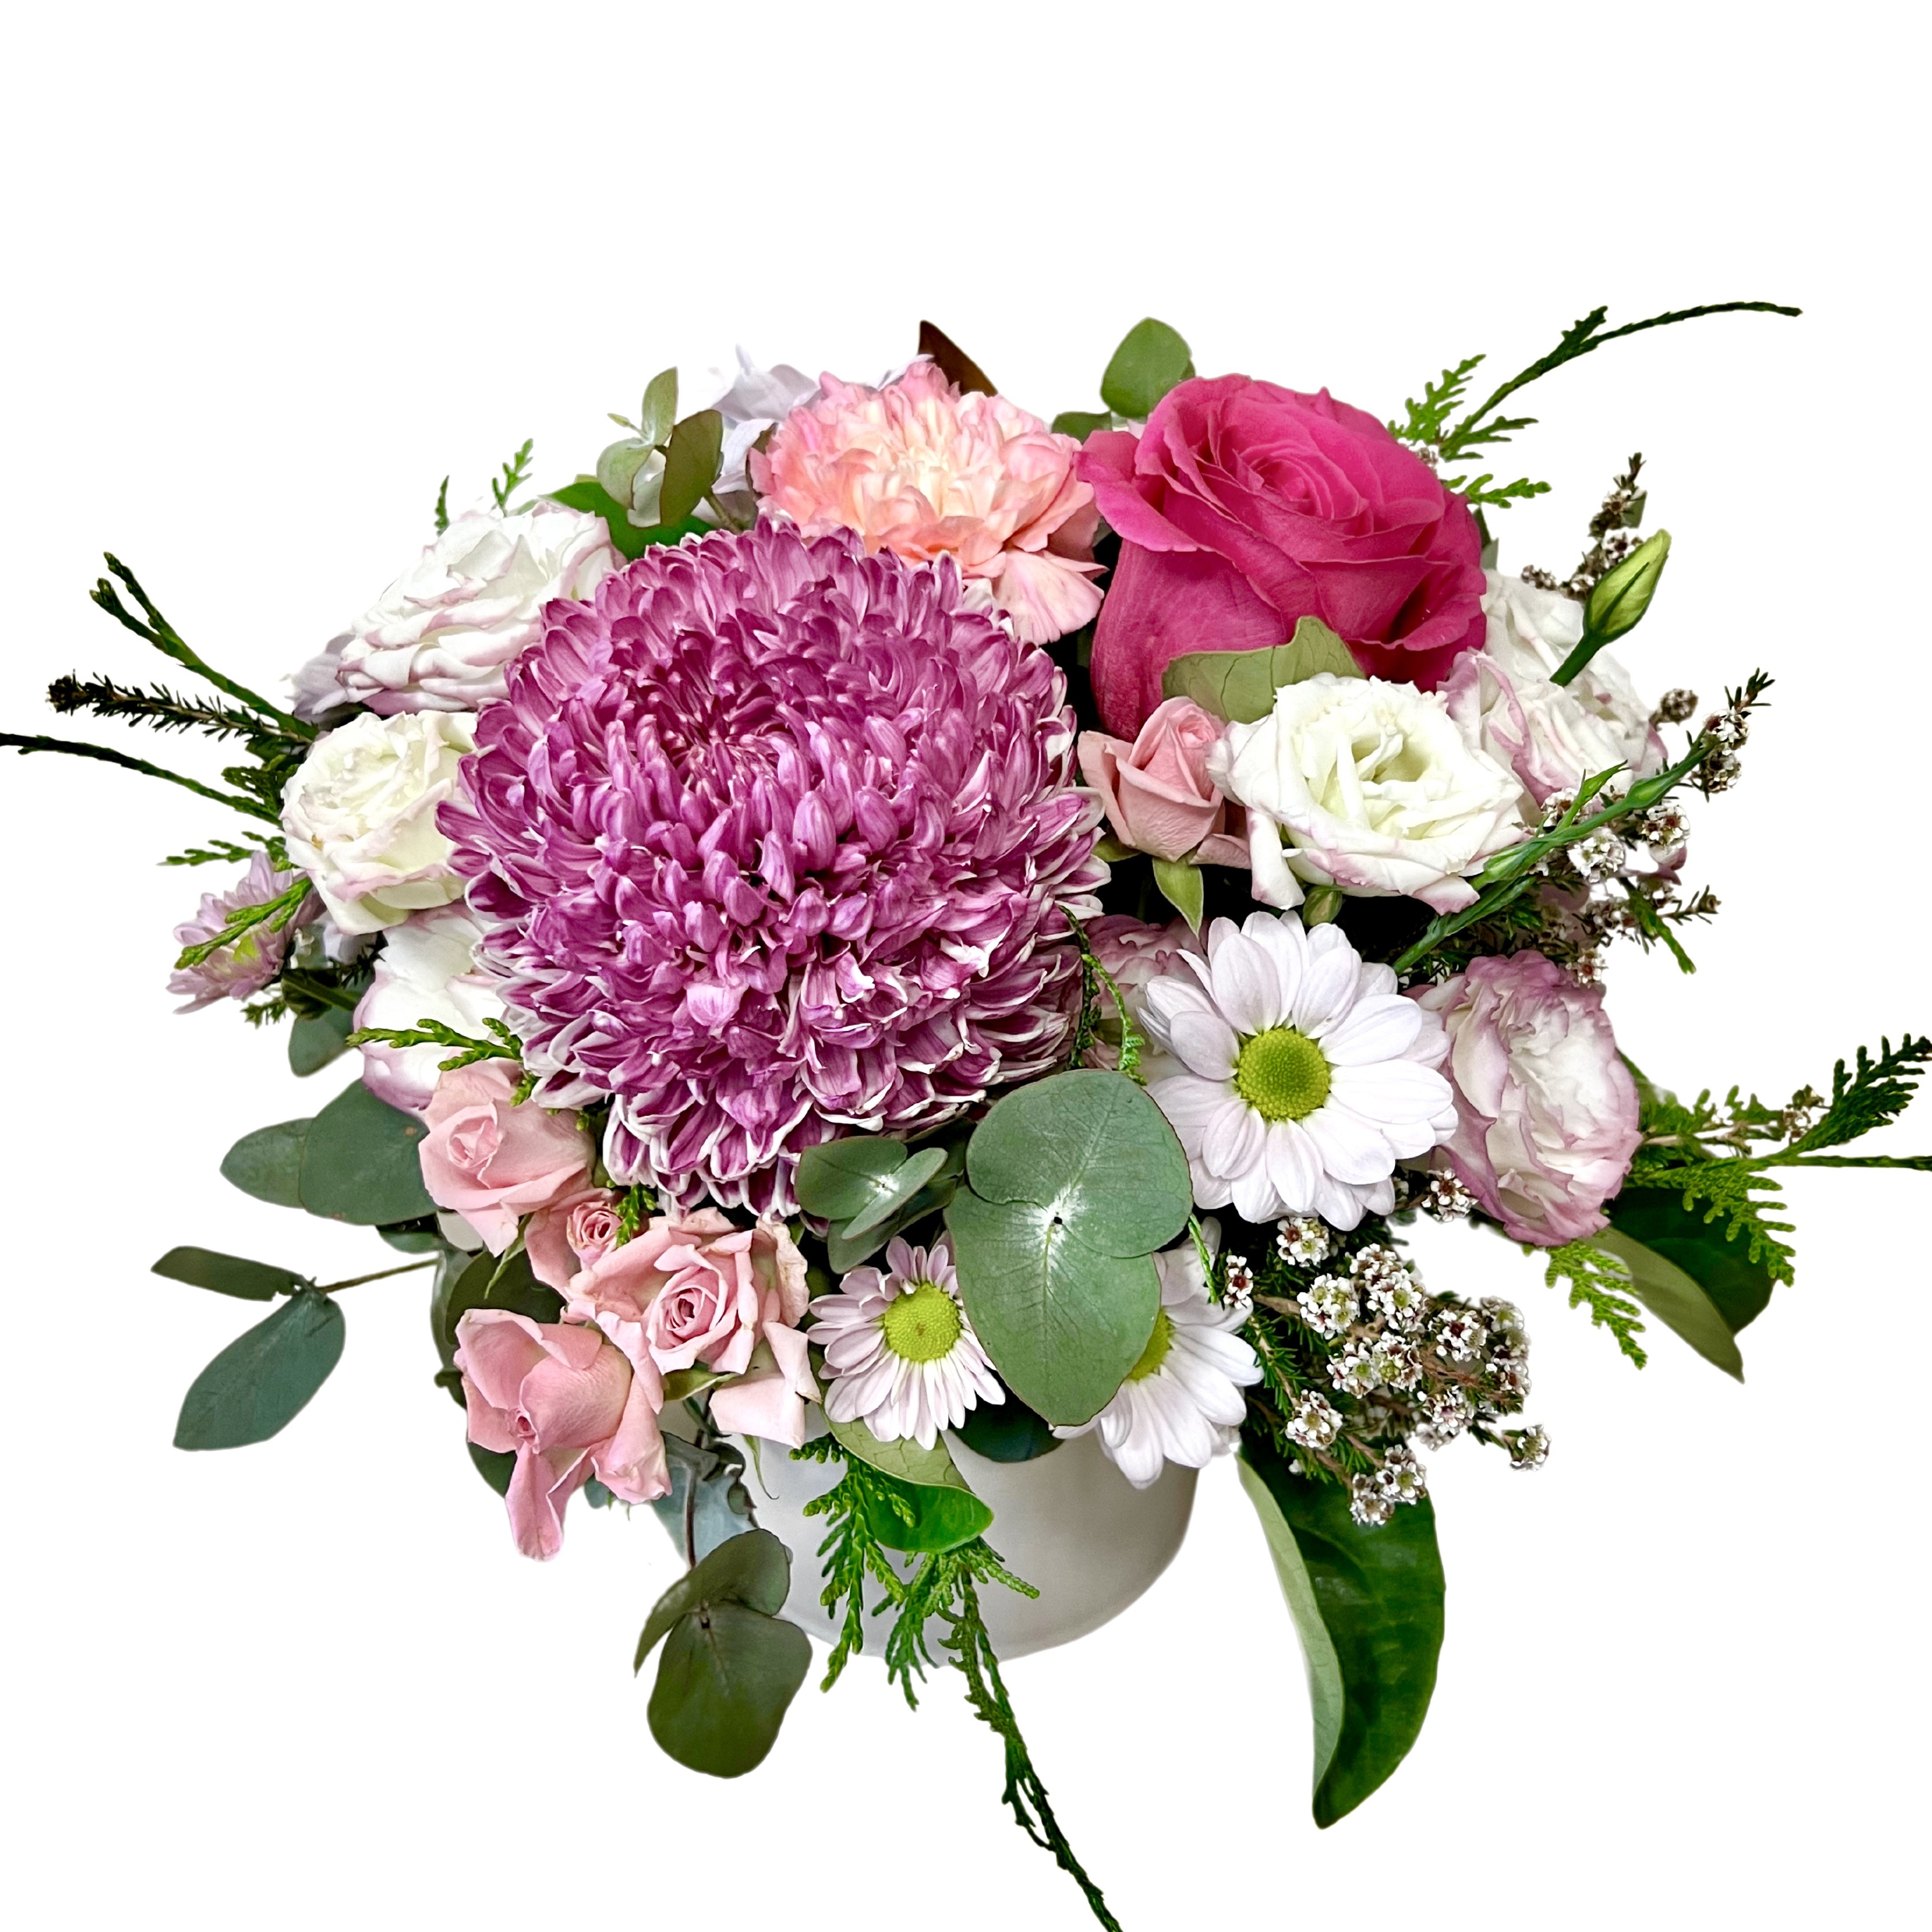 Mother's Classic Arrangement - Florist Choice